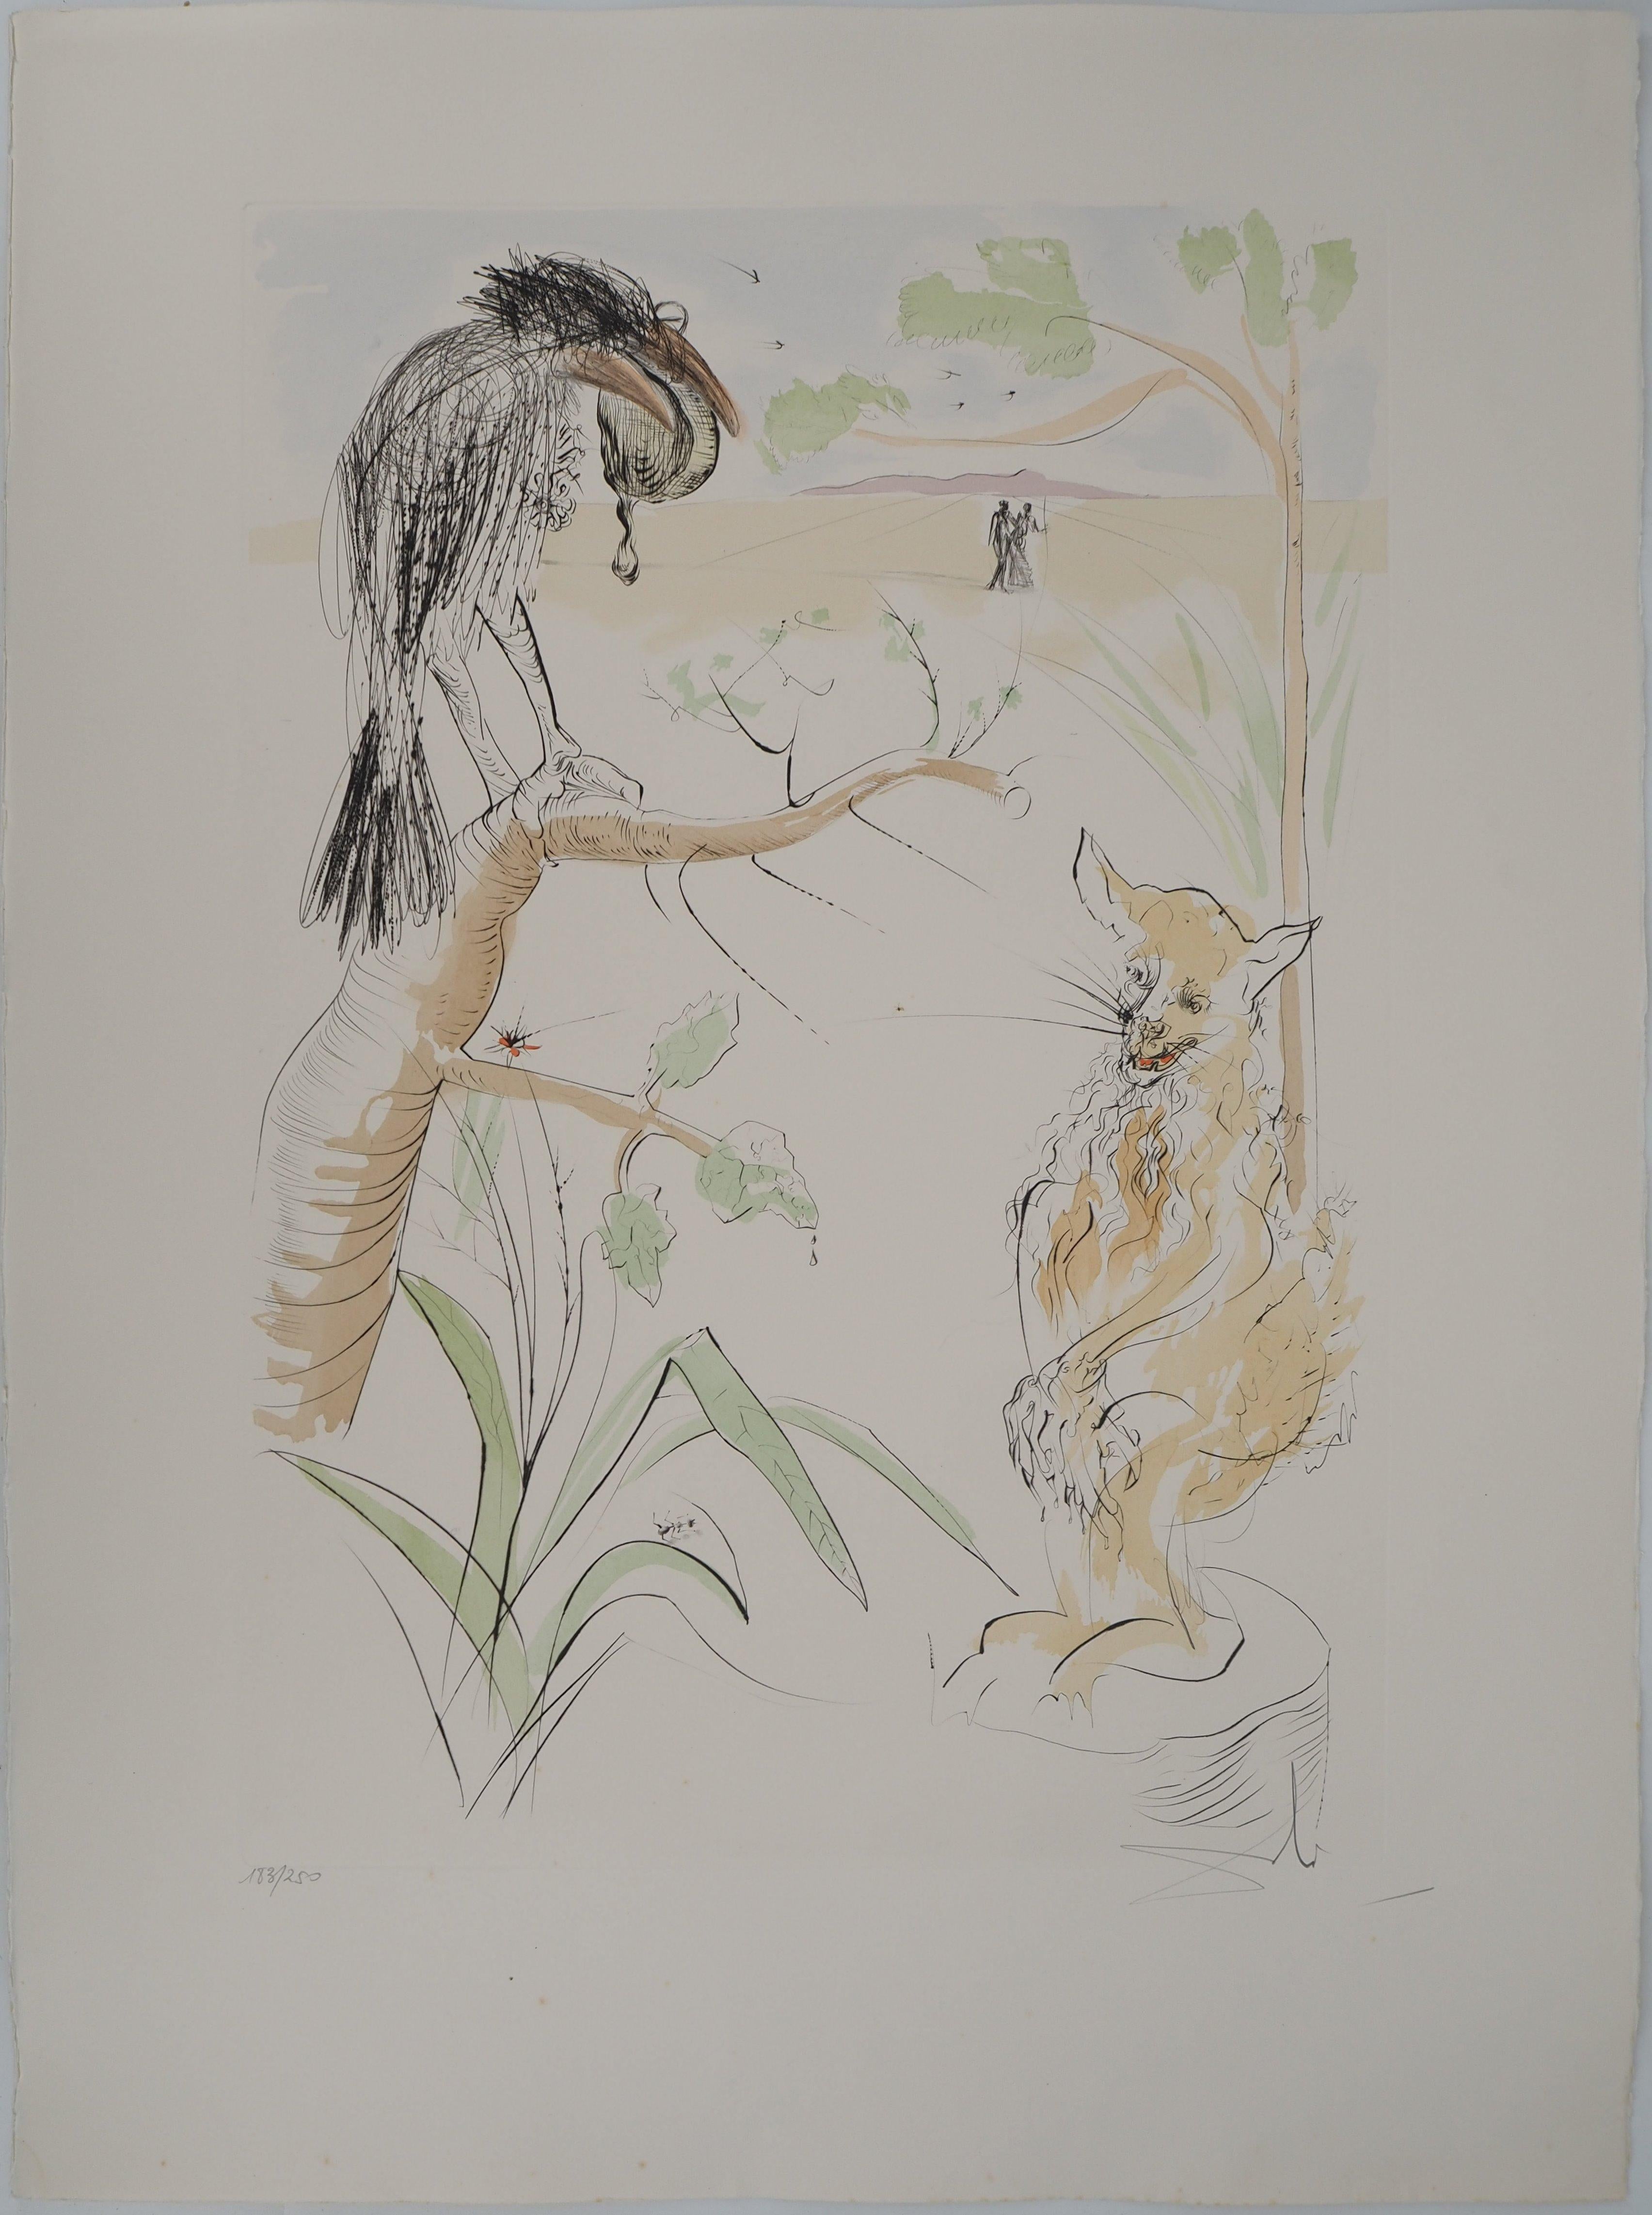 Animal Print Salvador Dalí - Le Bestiaire de La Fontaine, Le Crow et le Renard - Gravure originale, SIGNÉE DE LA MAIN, 1974